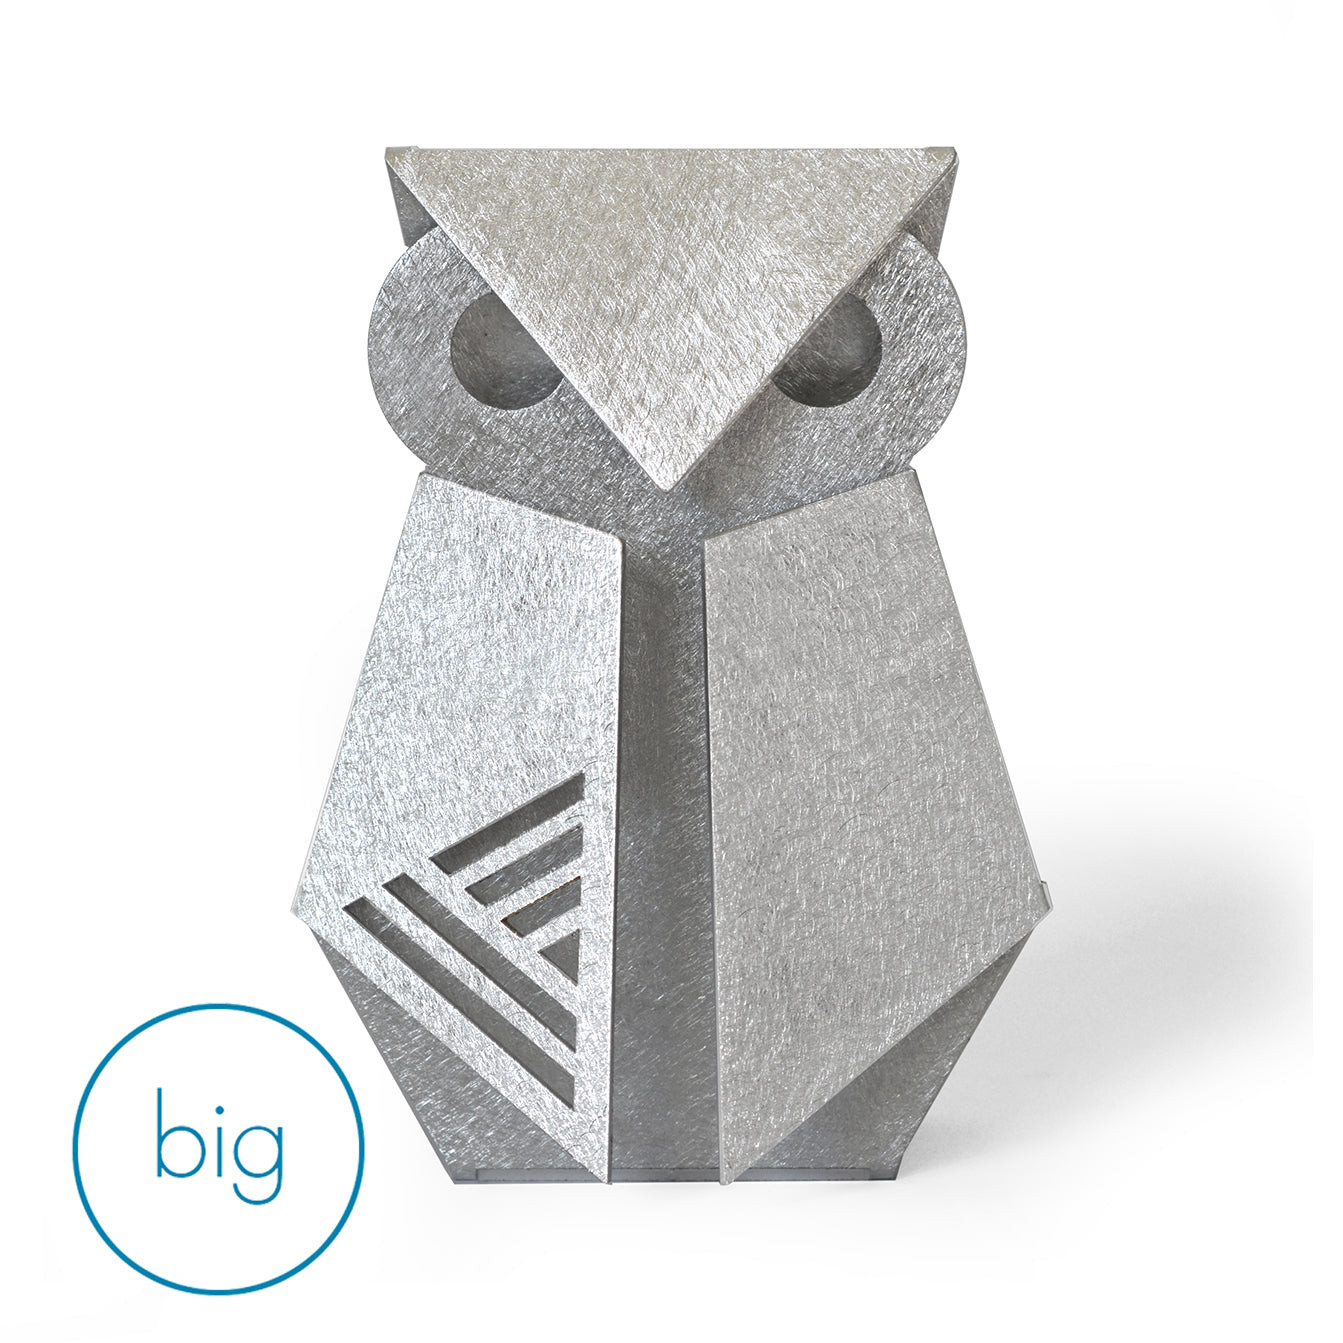 Aluminum Owl Origami Geometric Sculpture